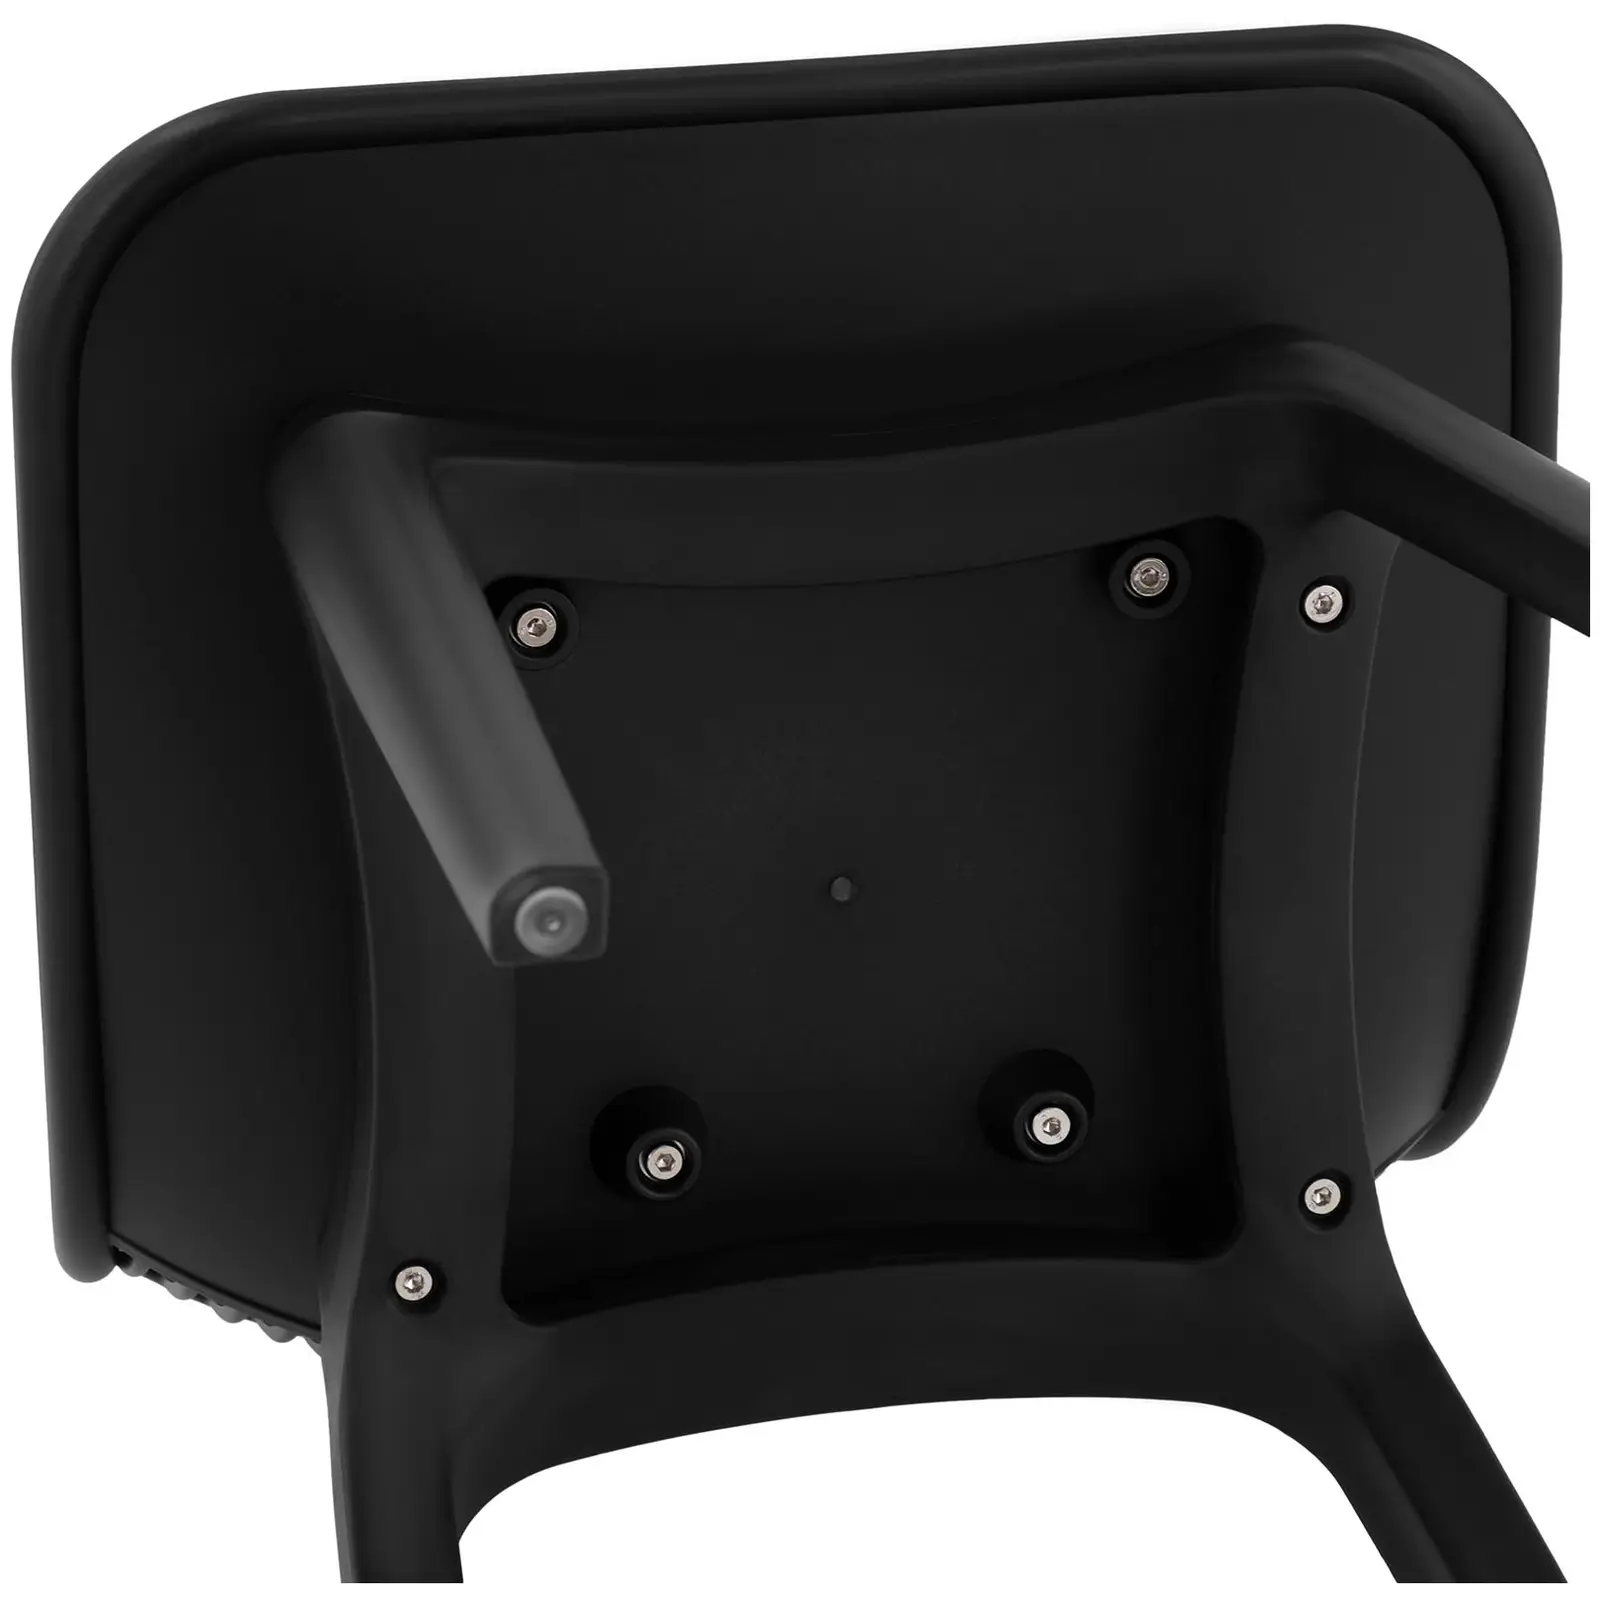 Stolička - sada 2 kusov - do 150 kg - opierka chrbta so vzduchovými otvormi - čierna